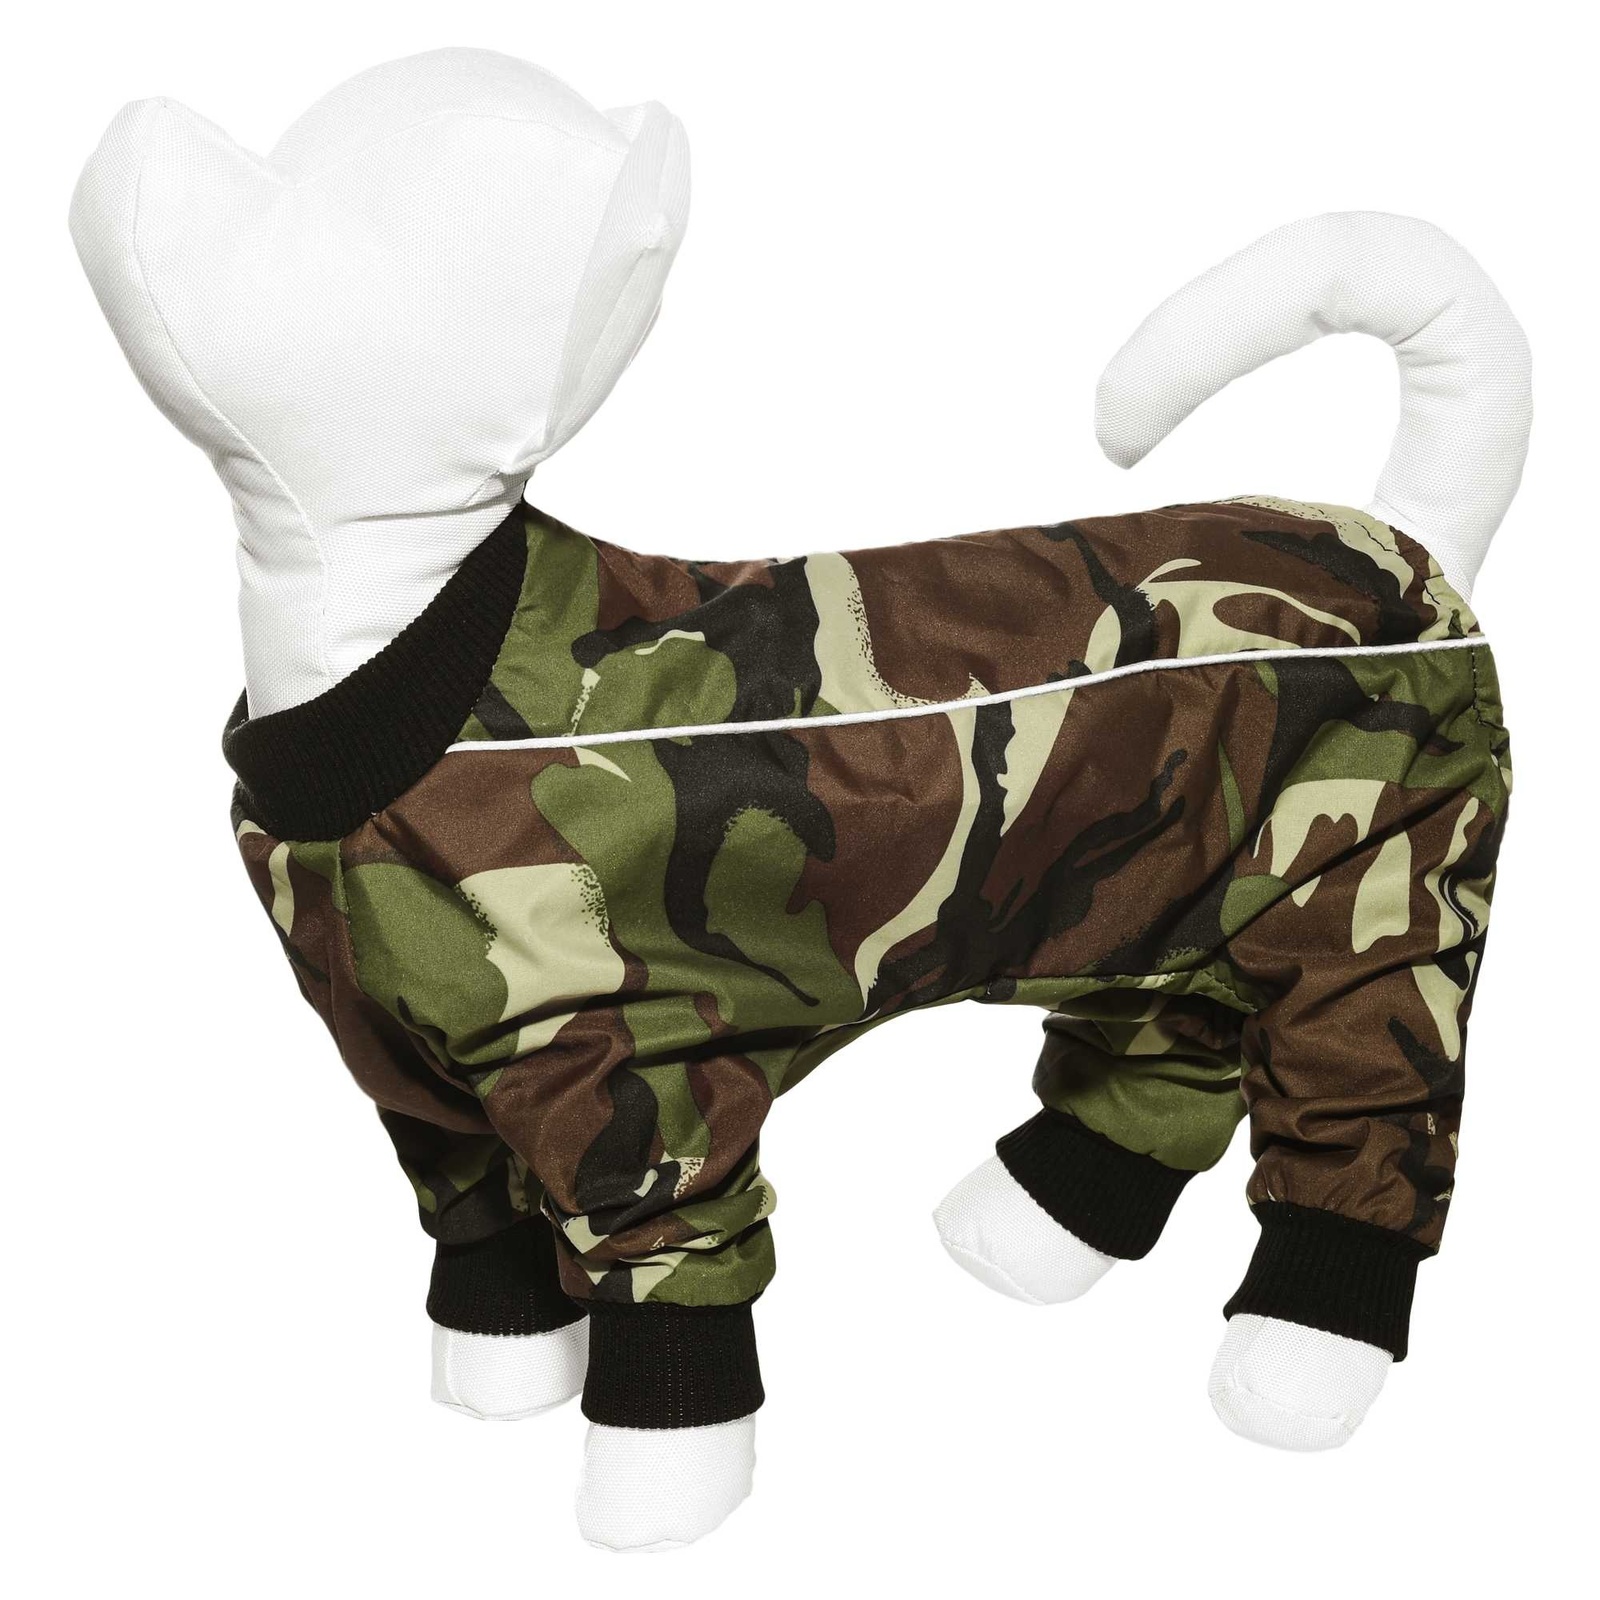 Yami-Yami одежда Yami-Yami одежда комбинезон для собак малых пород, с рисунком камуфляж (100 г) 42449